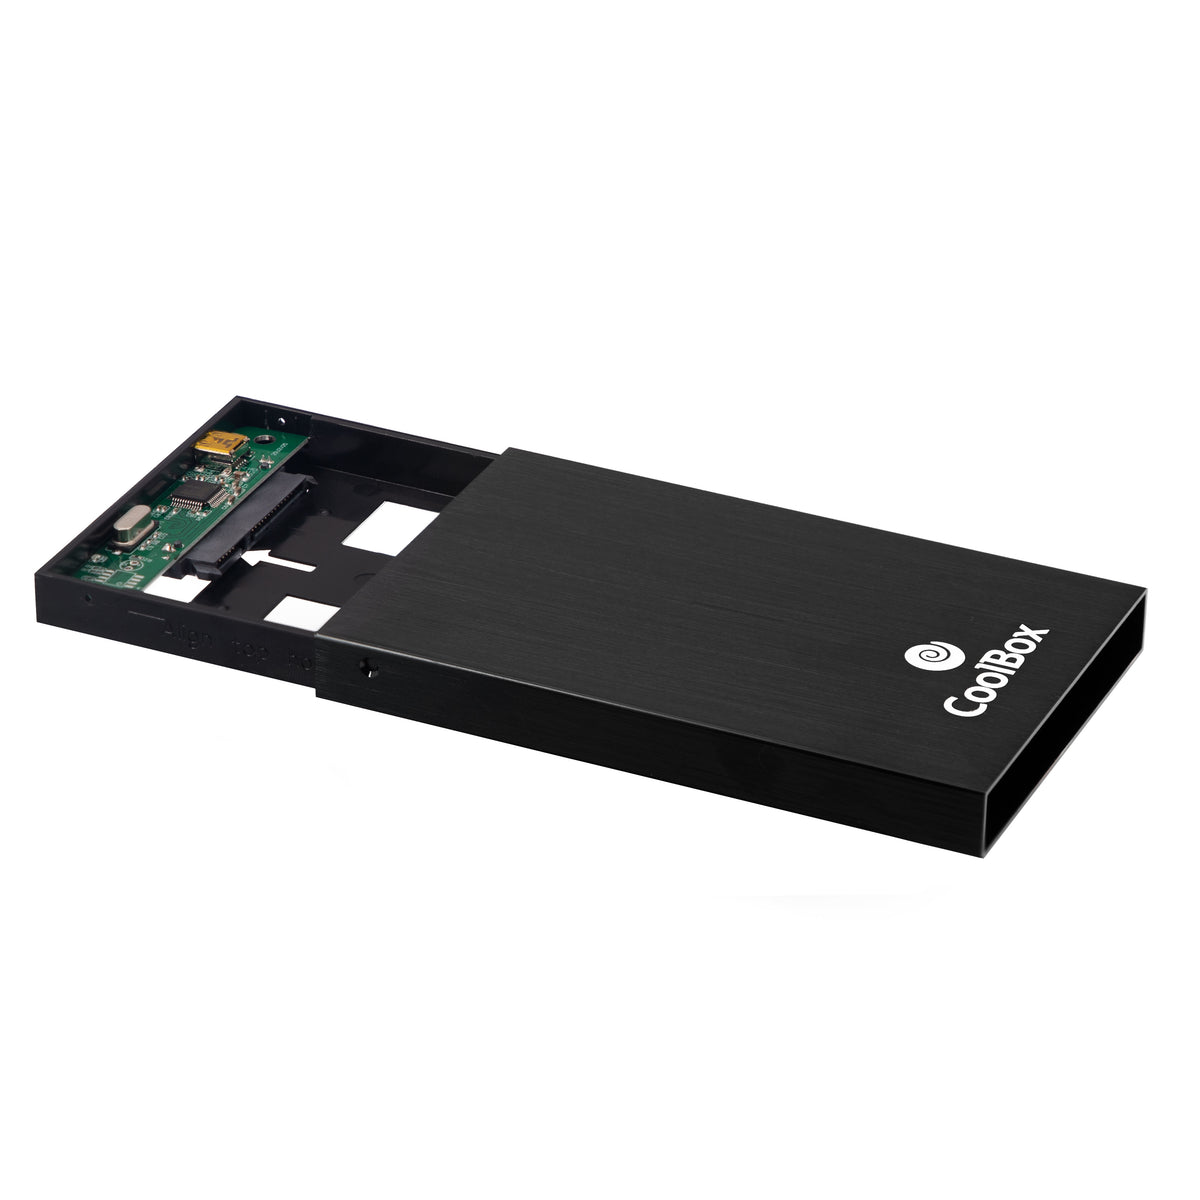 Caixa p/ disco externo 2.5 CoolBox 2512 USB 2.0 Aluminio